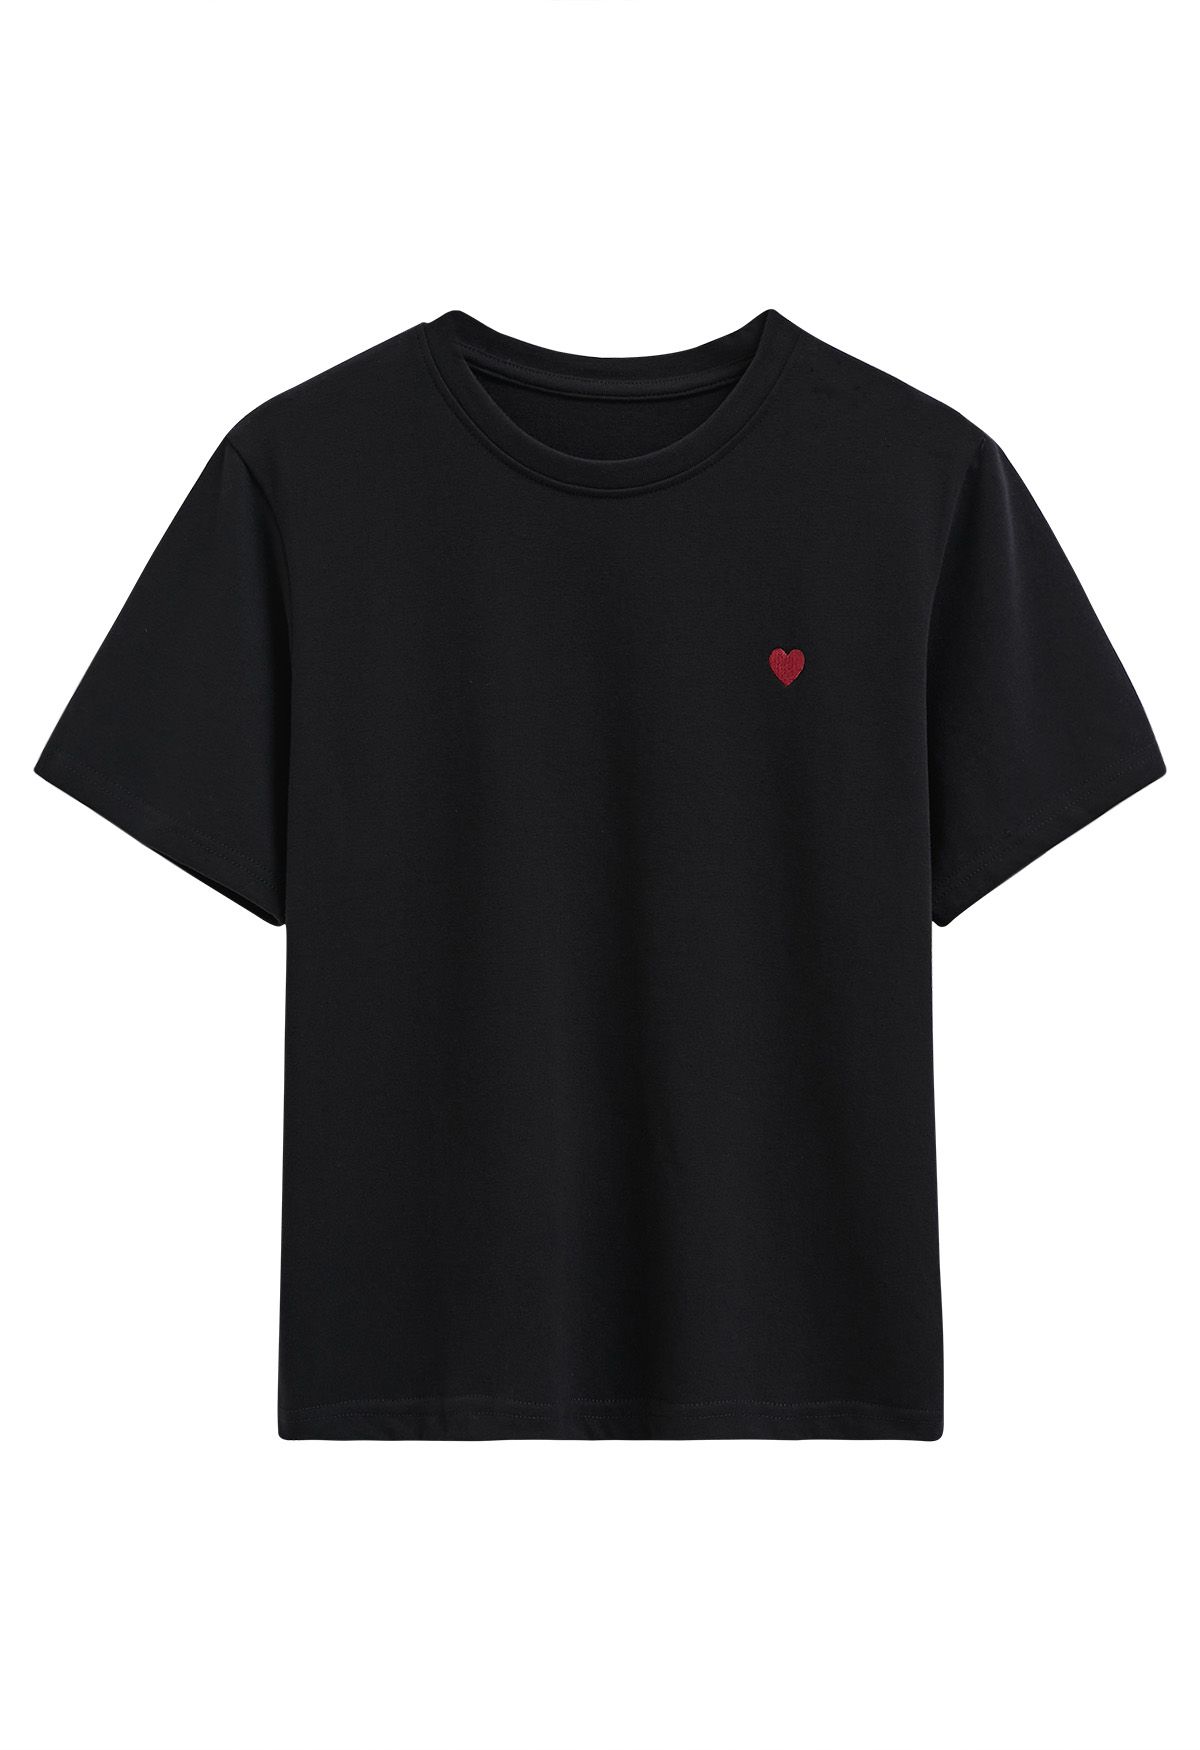 Linda camiseta con estampado de corazón bordado en negro